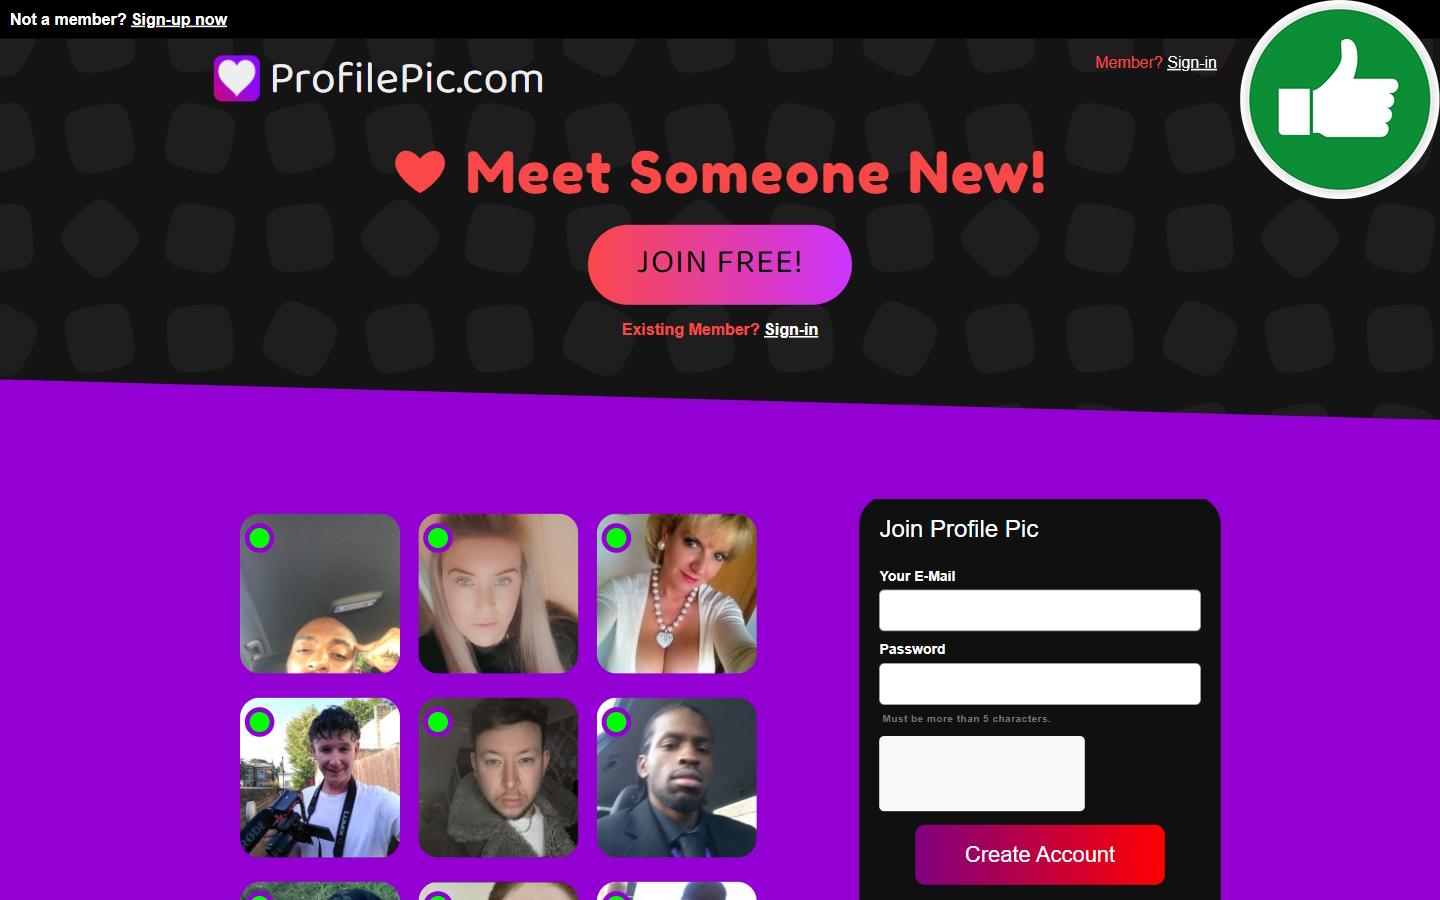 Review ProfilePic.com Scam